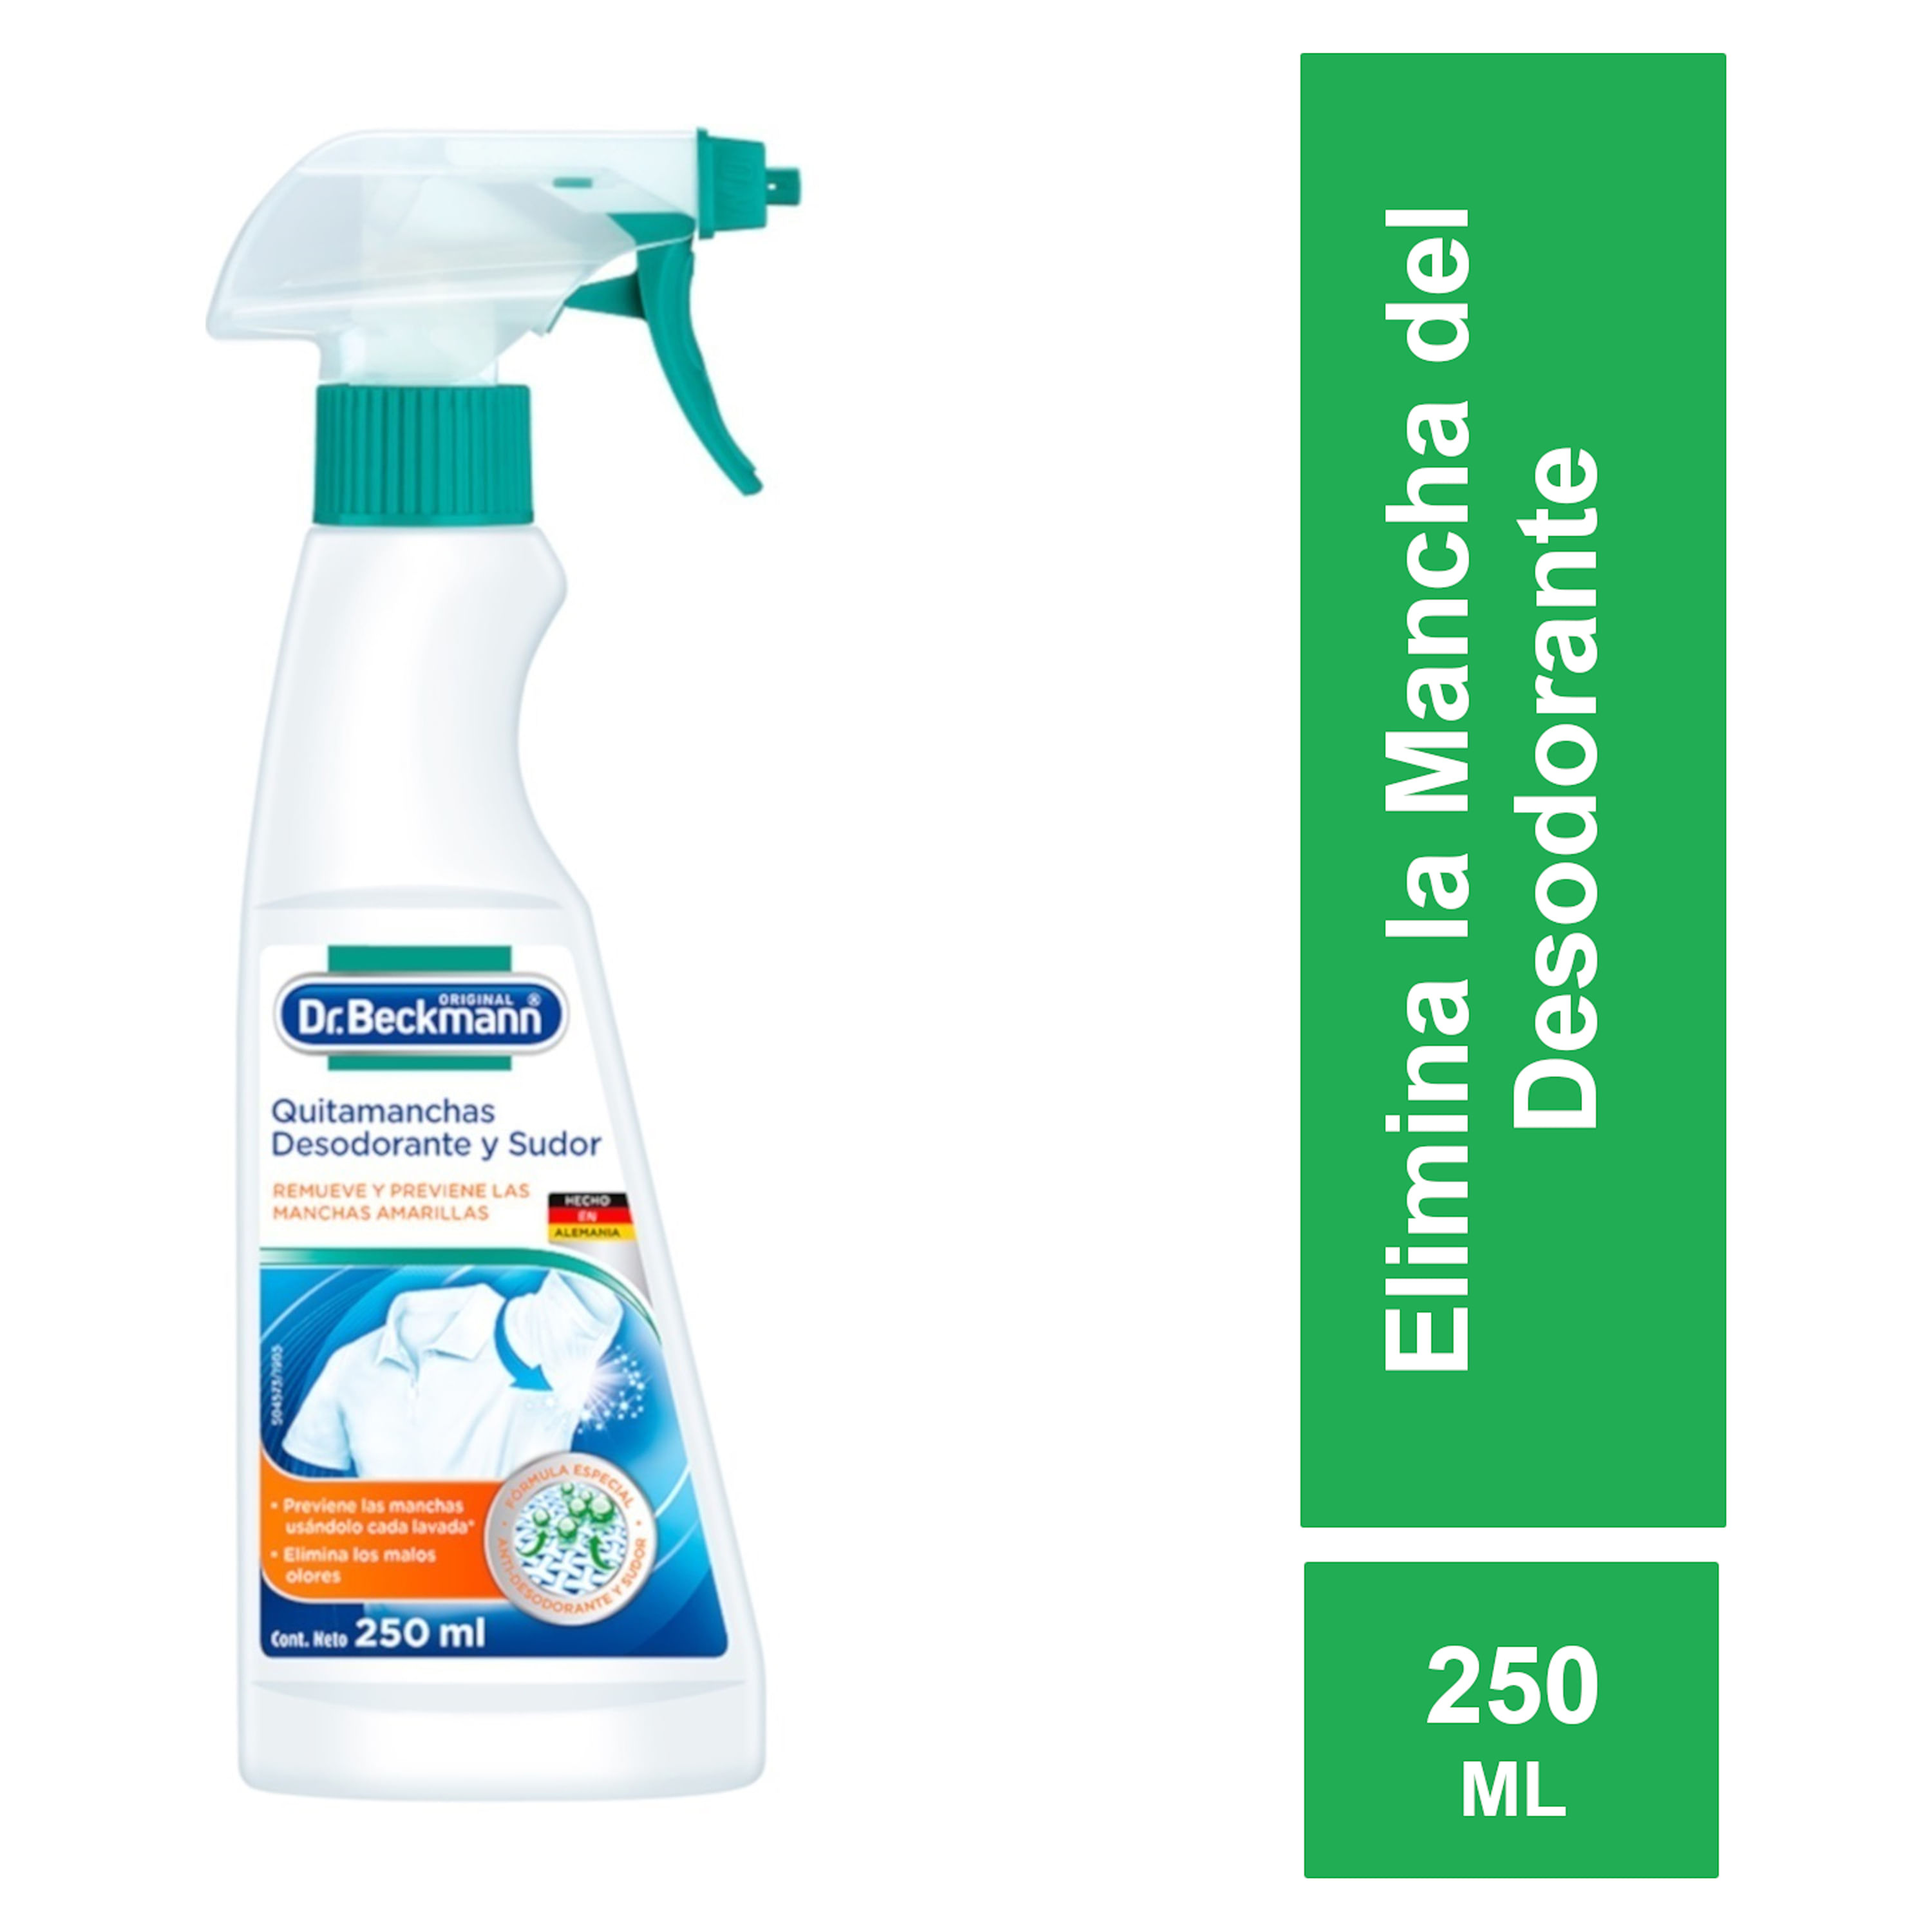 Quitamancha Desodorante Y Sudor Dr.beckmann 250 Ml. — Farmacia El